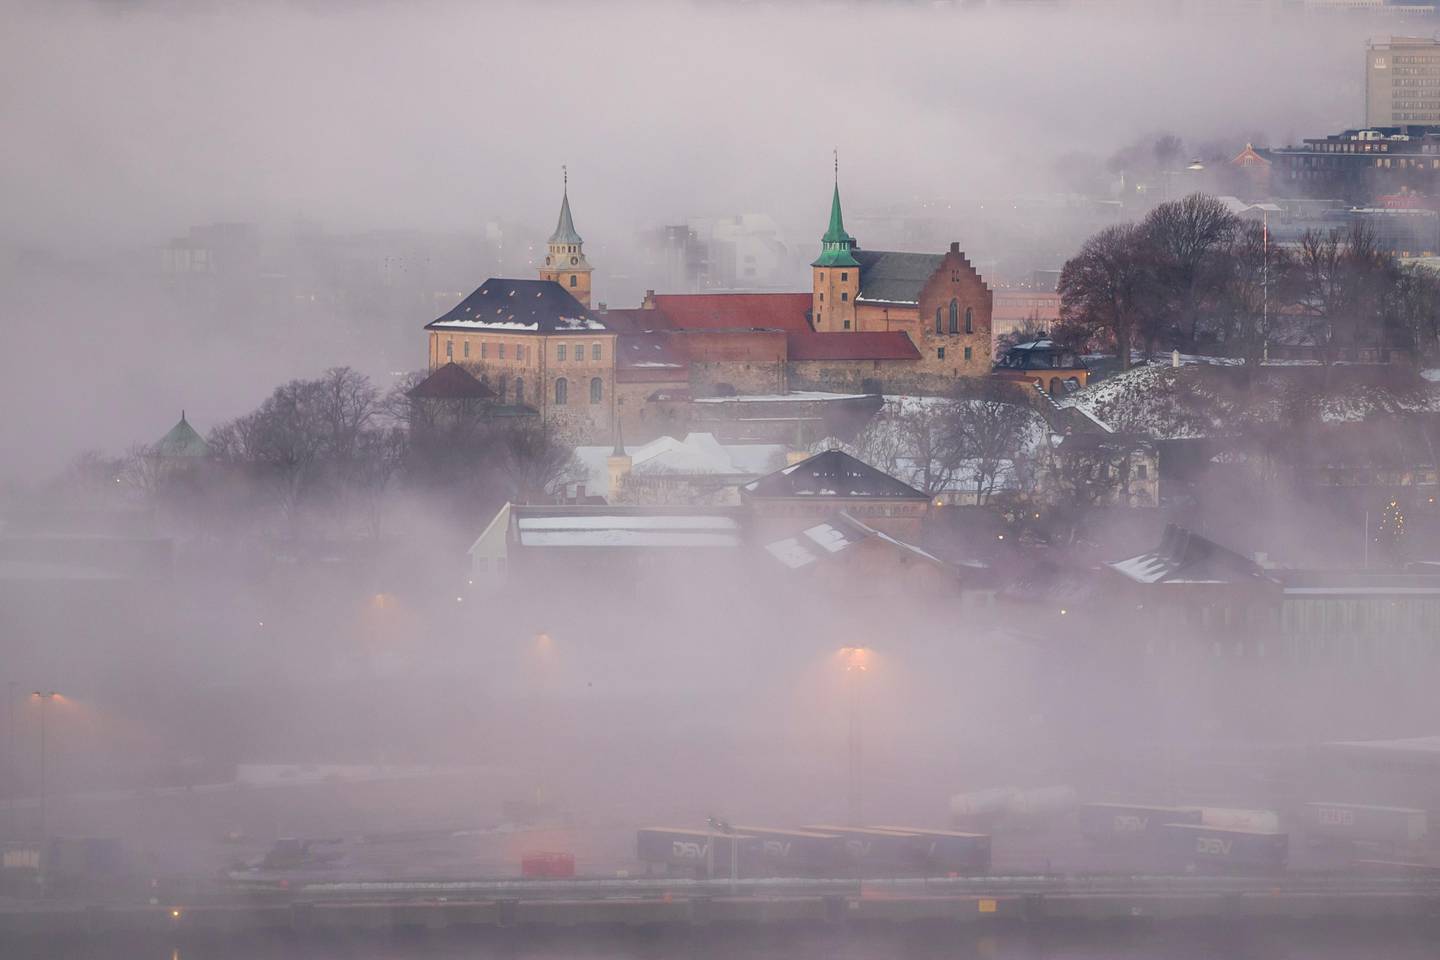 Oslo  20181228.
Akershus festning stikker ut av tåken som ligger over Oslo sentrum fredag morgen.
Foto: Håkon Mosvold Larsen / NTB scanpix